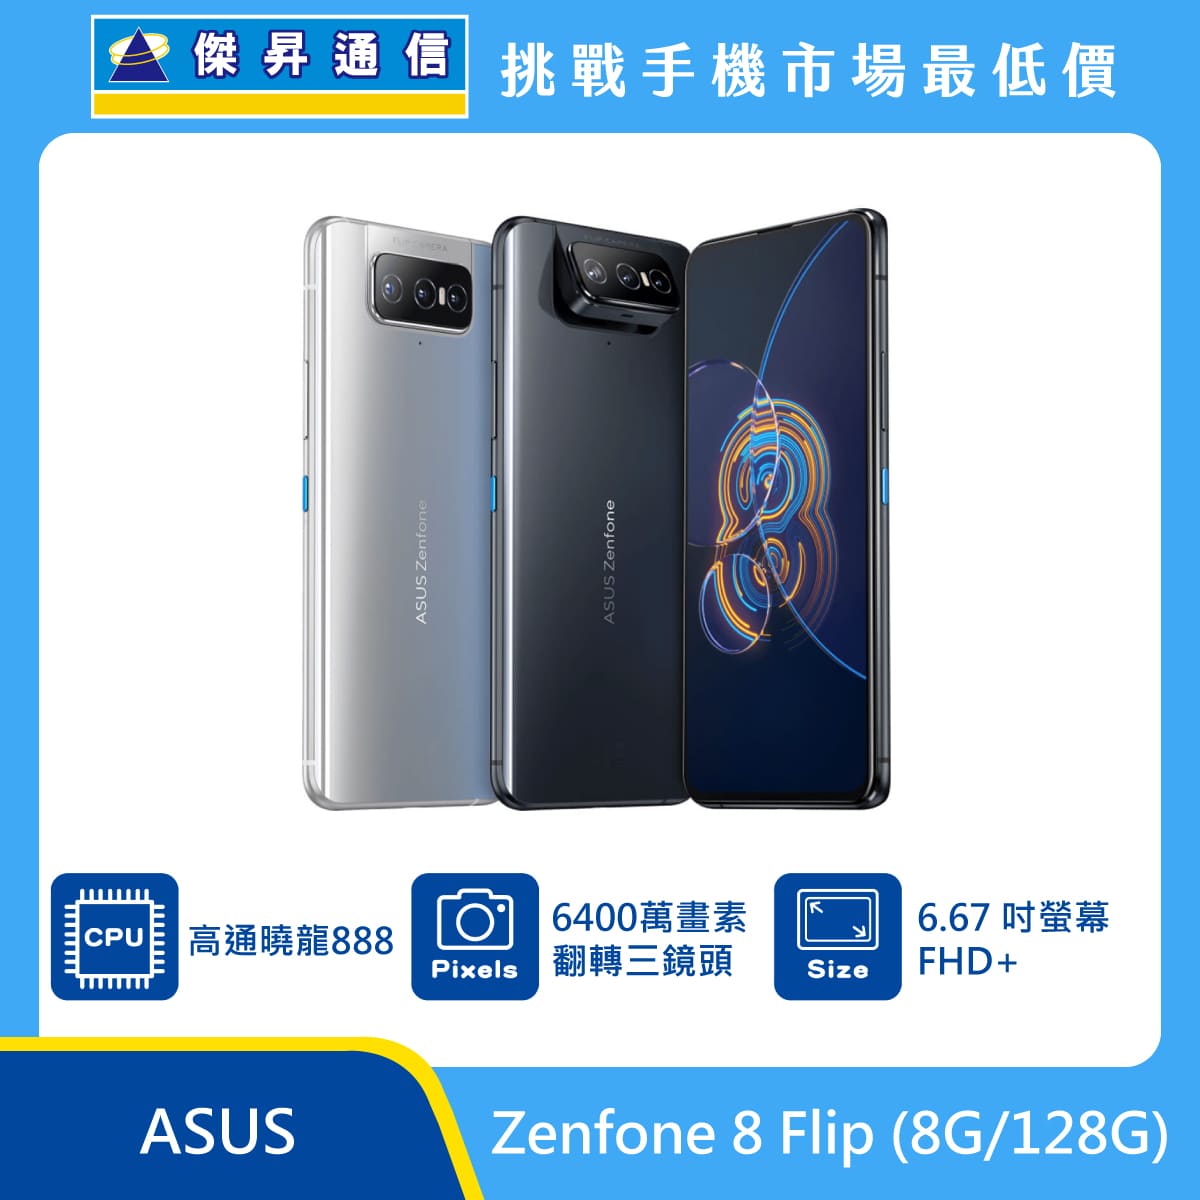 ASUS Zenfone 8 Flip (8G/128G)